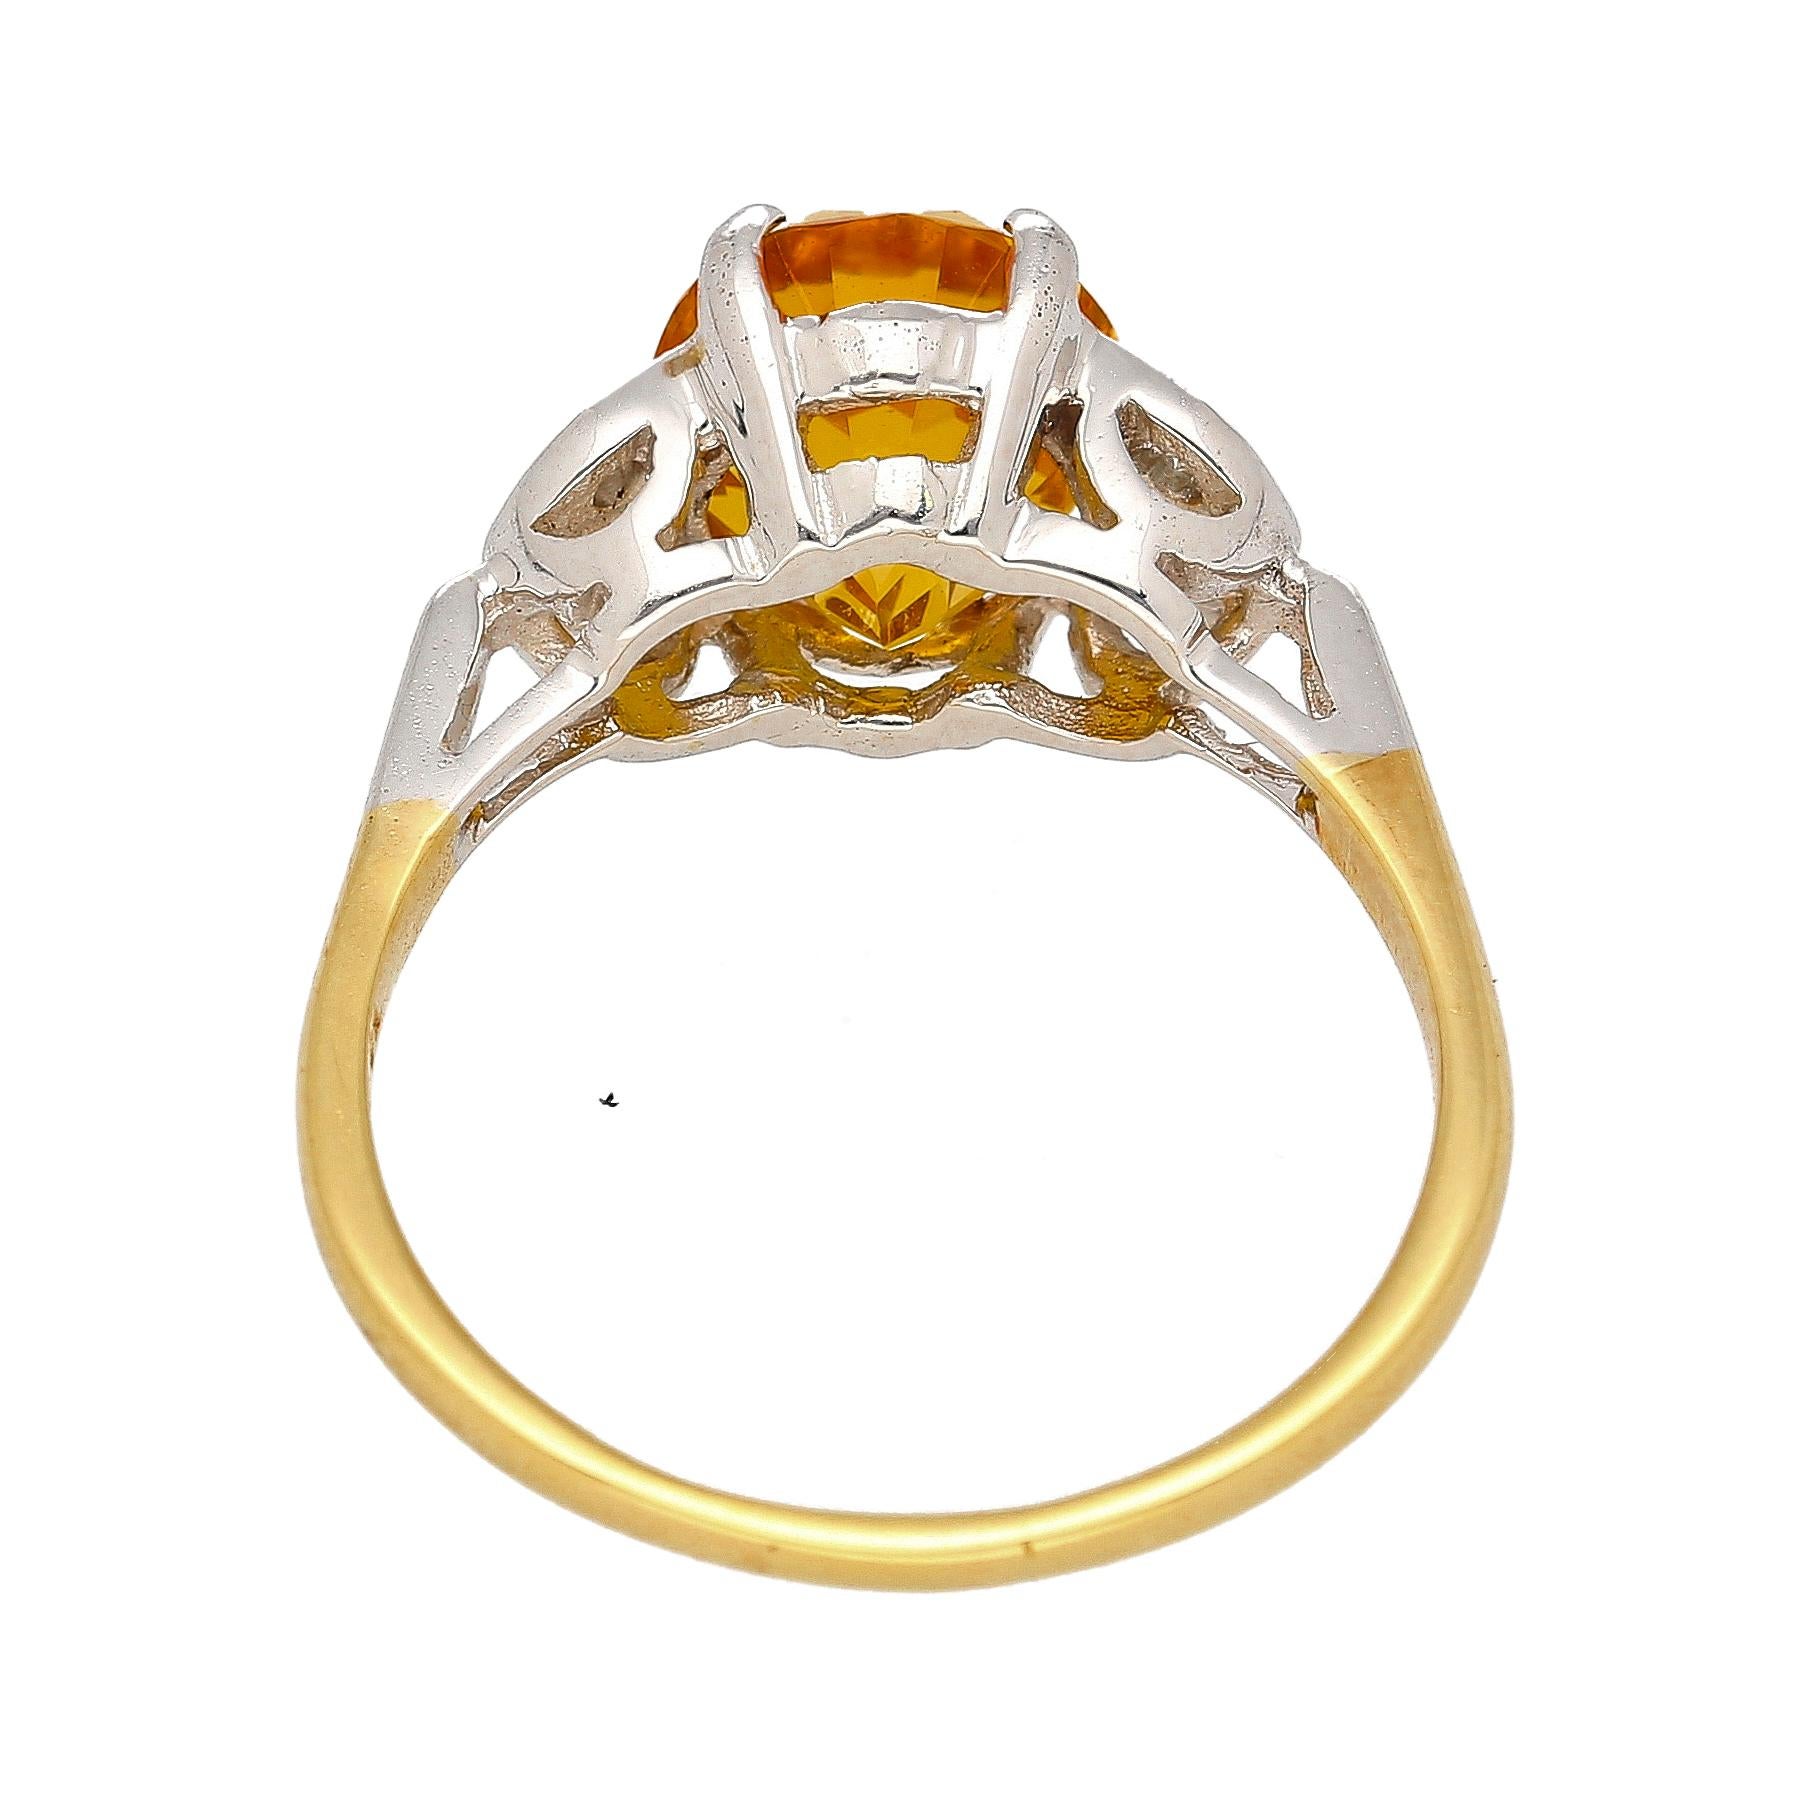 Ring aus natürlichem gelbem Saphir und Diamant mit 3,06 Karat. In einer atemberaubenden 2-Ton-Fassung aus Platin und 14 Karat Gelbgold. Der Mittelstein besticht durch seine Brillanz und seine lebhafte, satte gelbe Farbsättigung. Ovaler